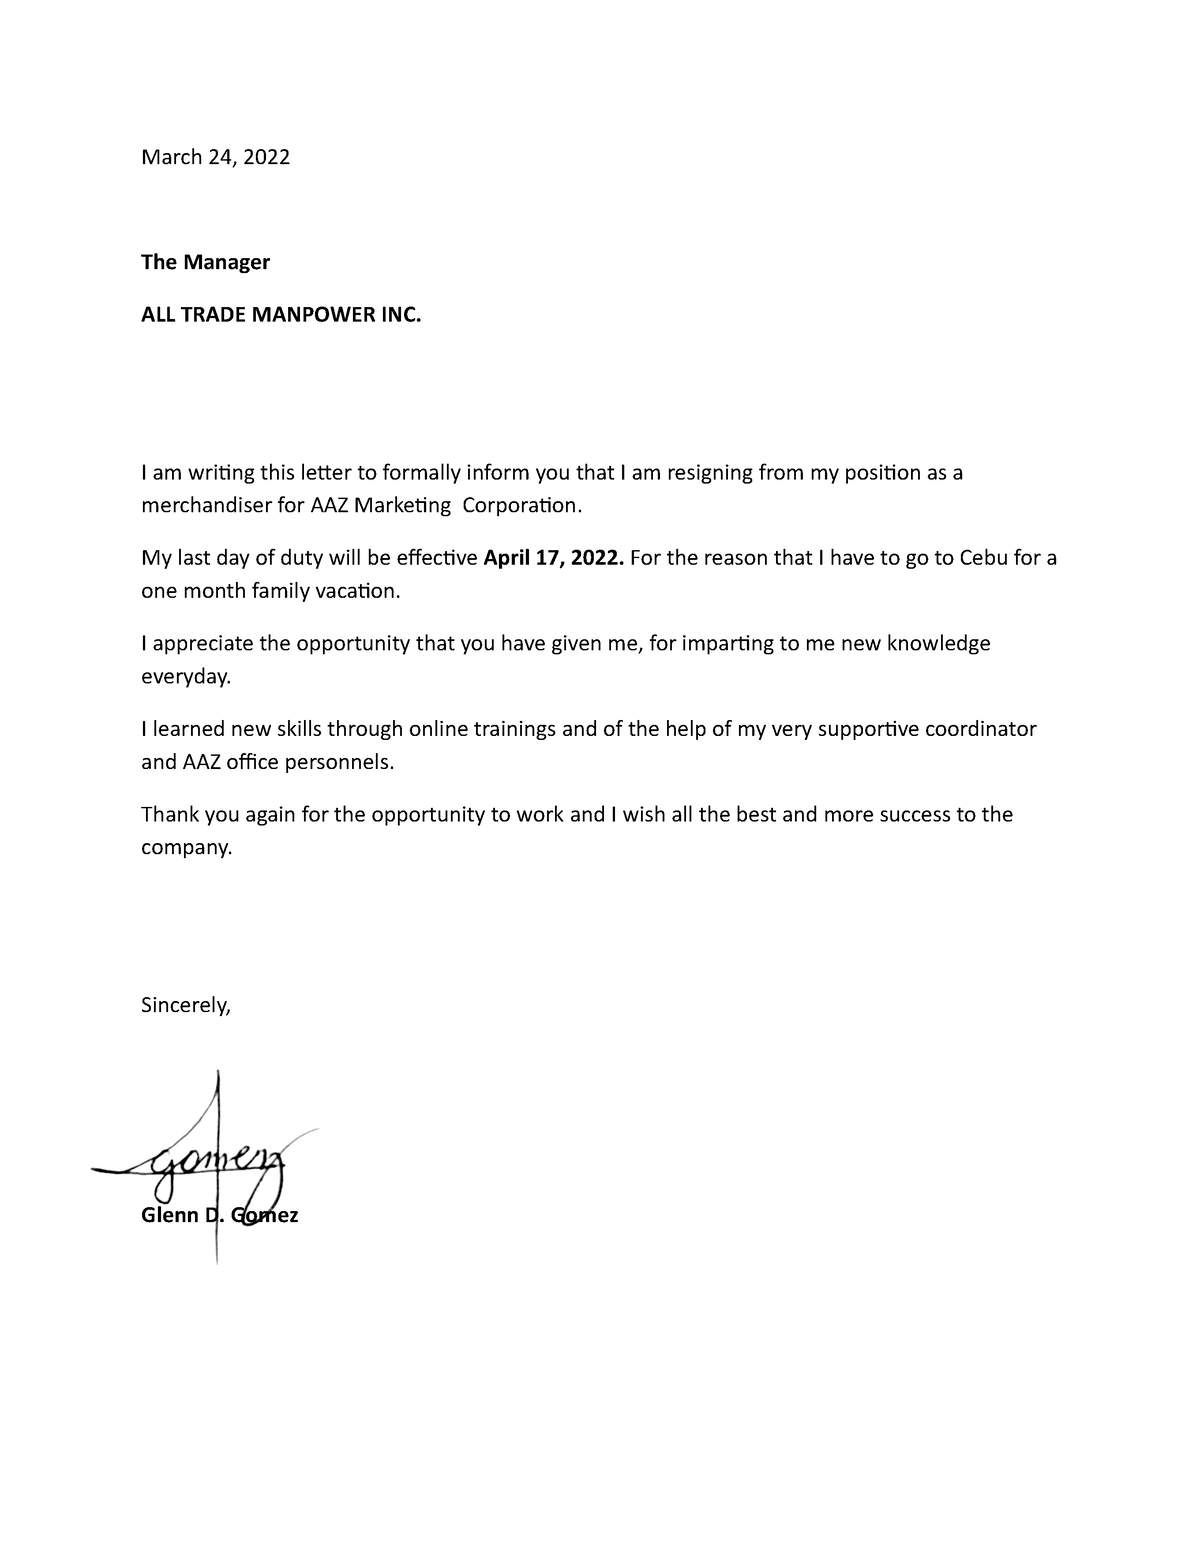 Resignation Letter For Merchandiser